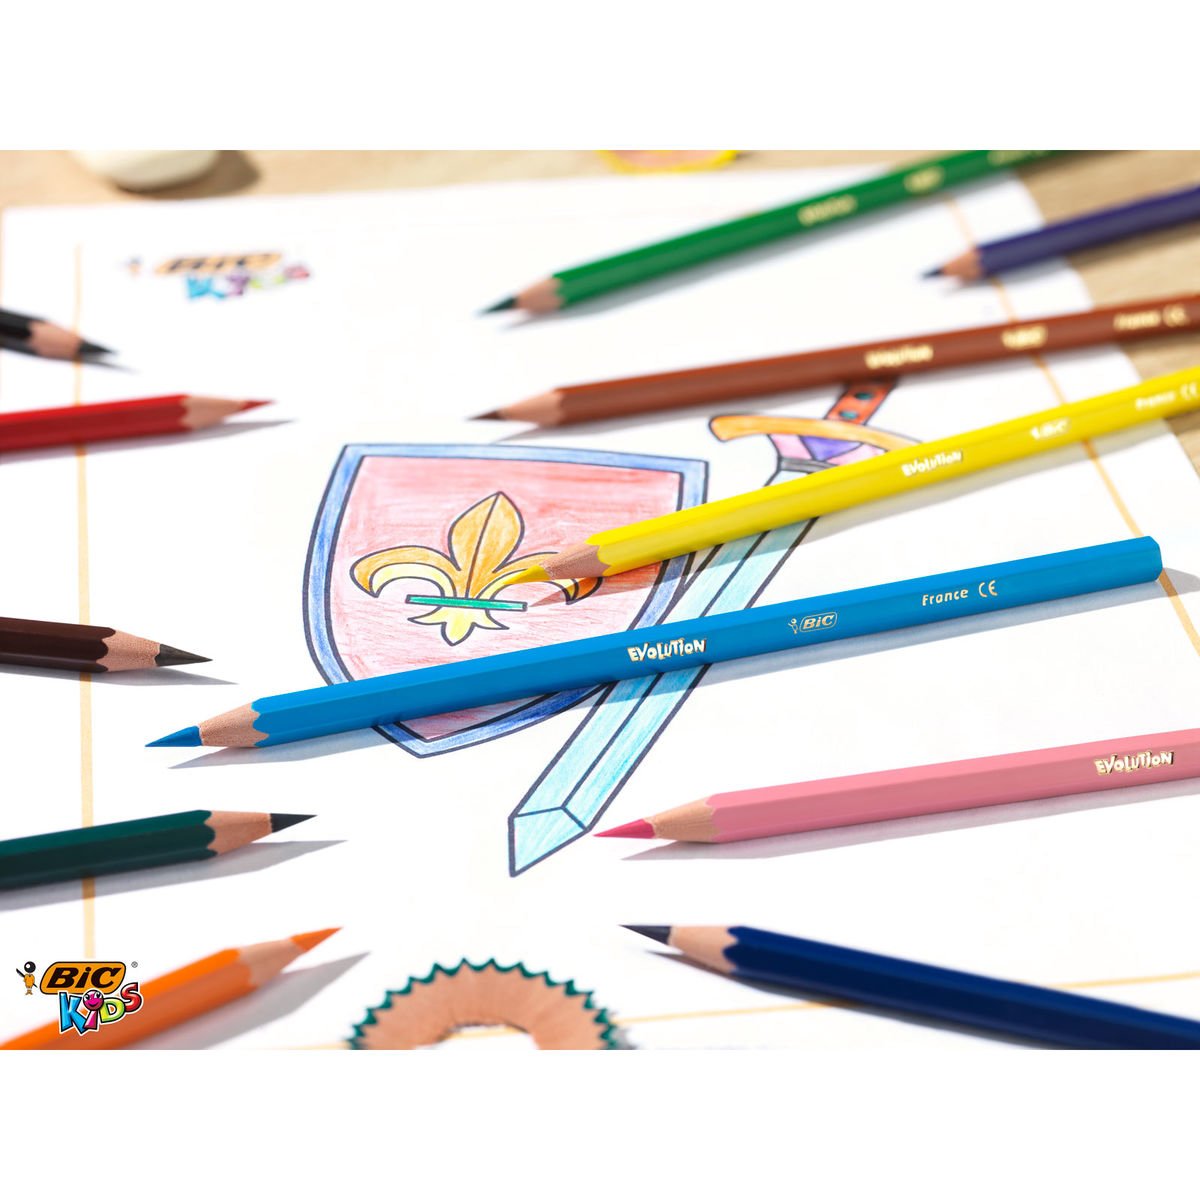 Bic Kids 18+6 Crayons de couleur Evolution ECOlutions